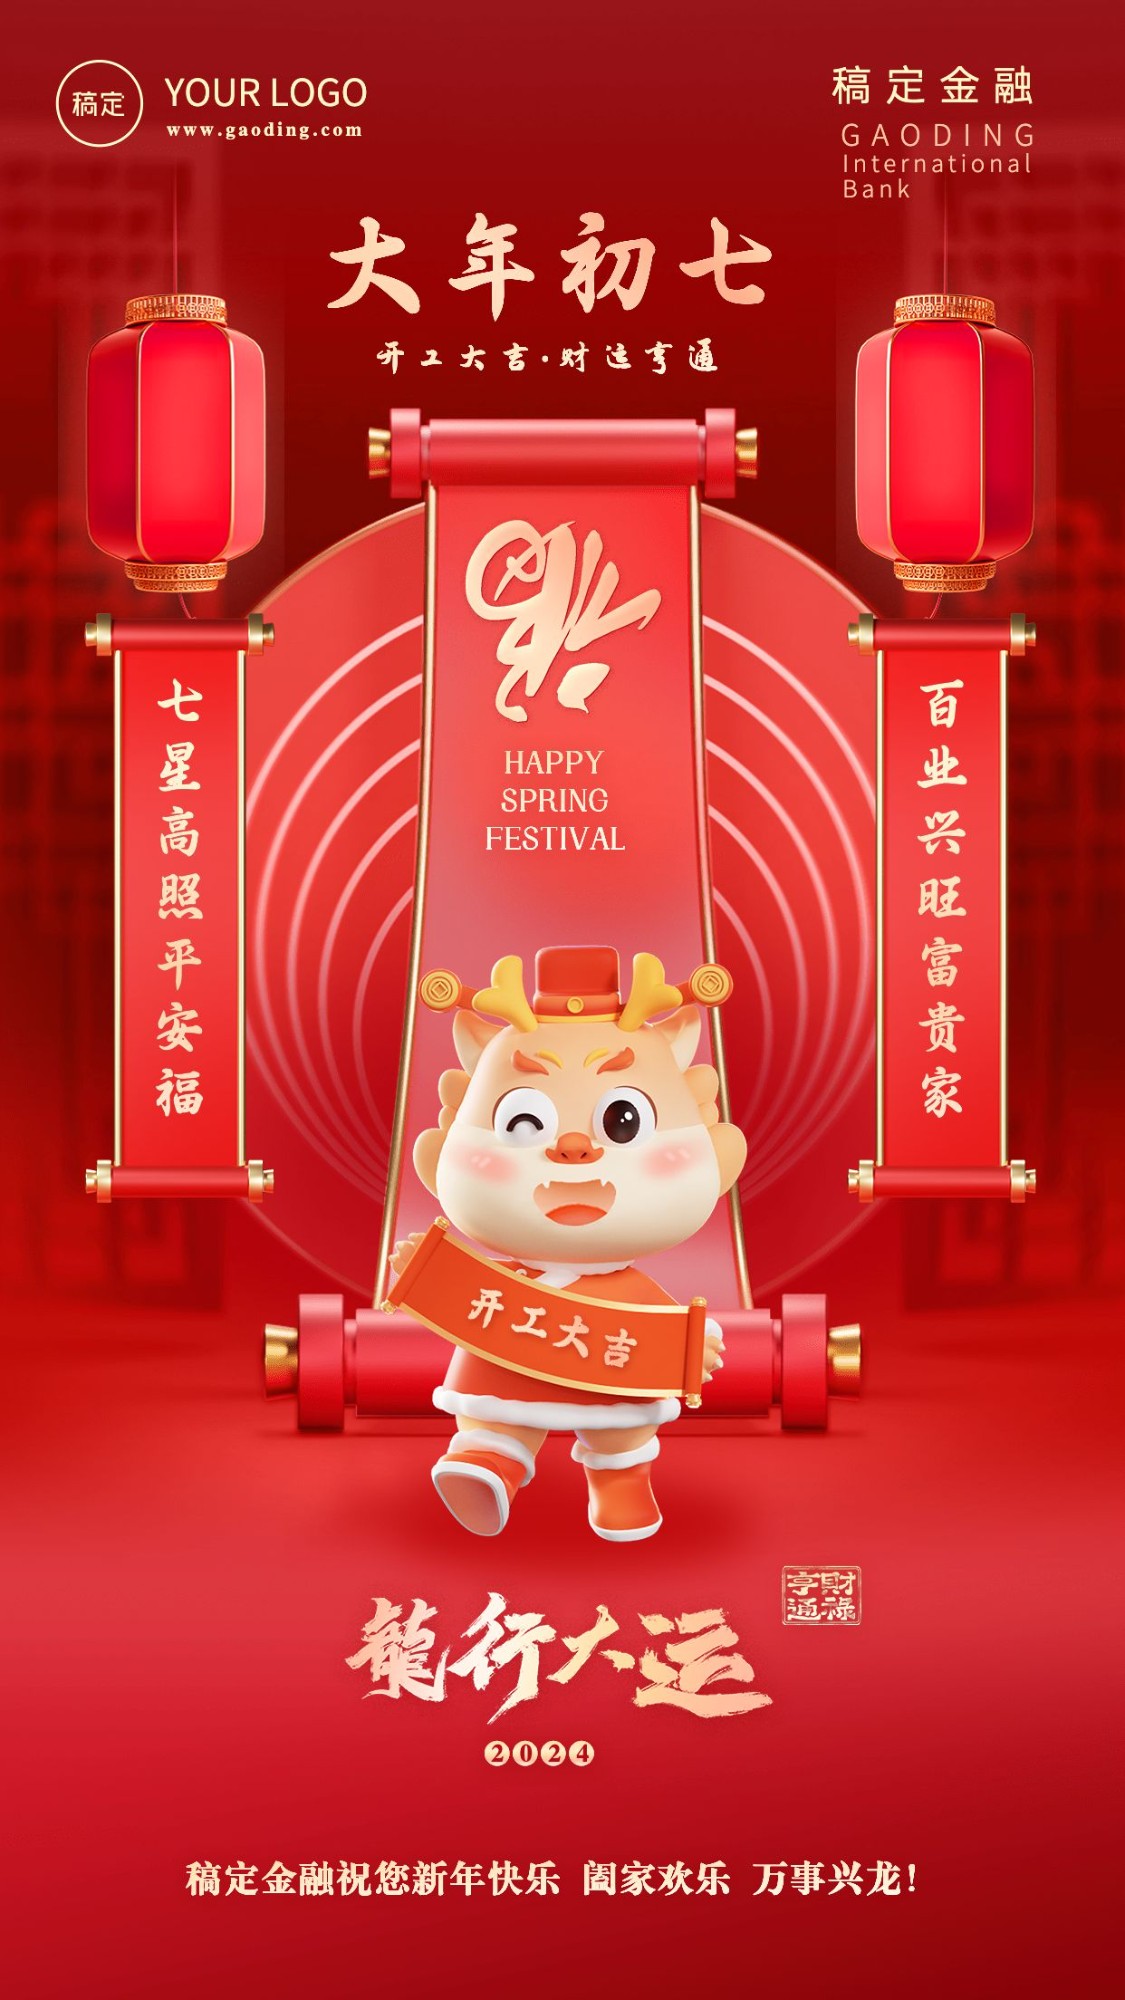 春节龙年正月初七金融保险节日祝福喜庆3D系列手机海报预览效果